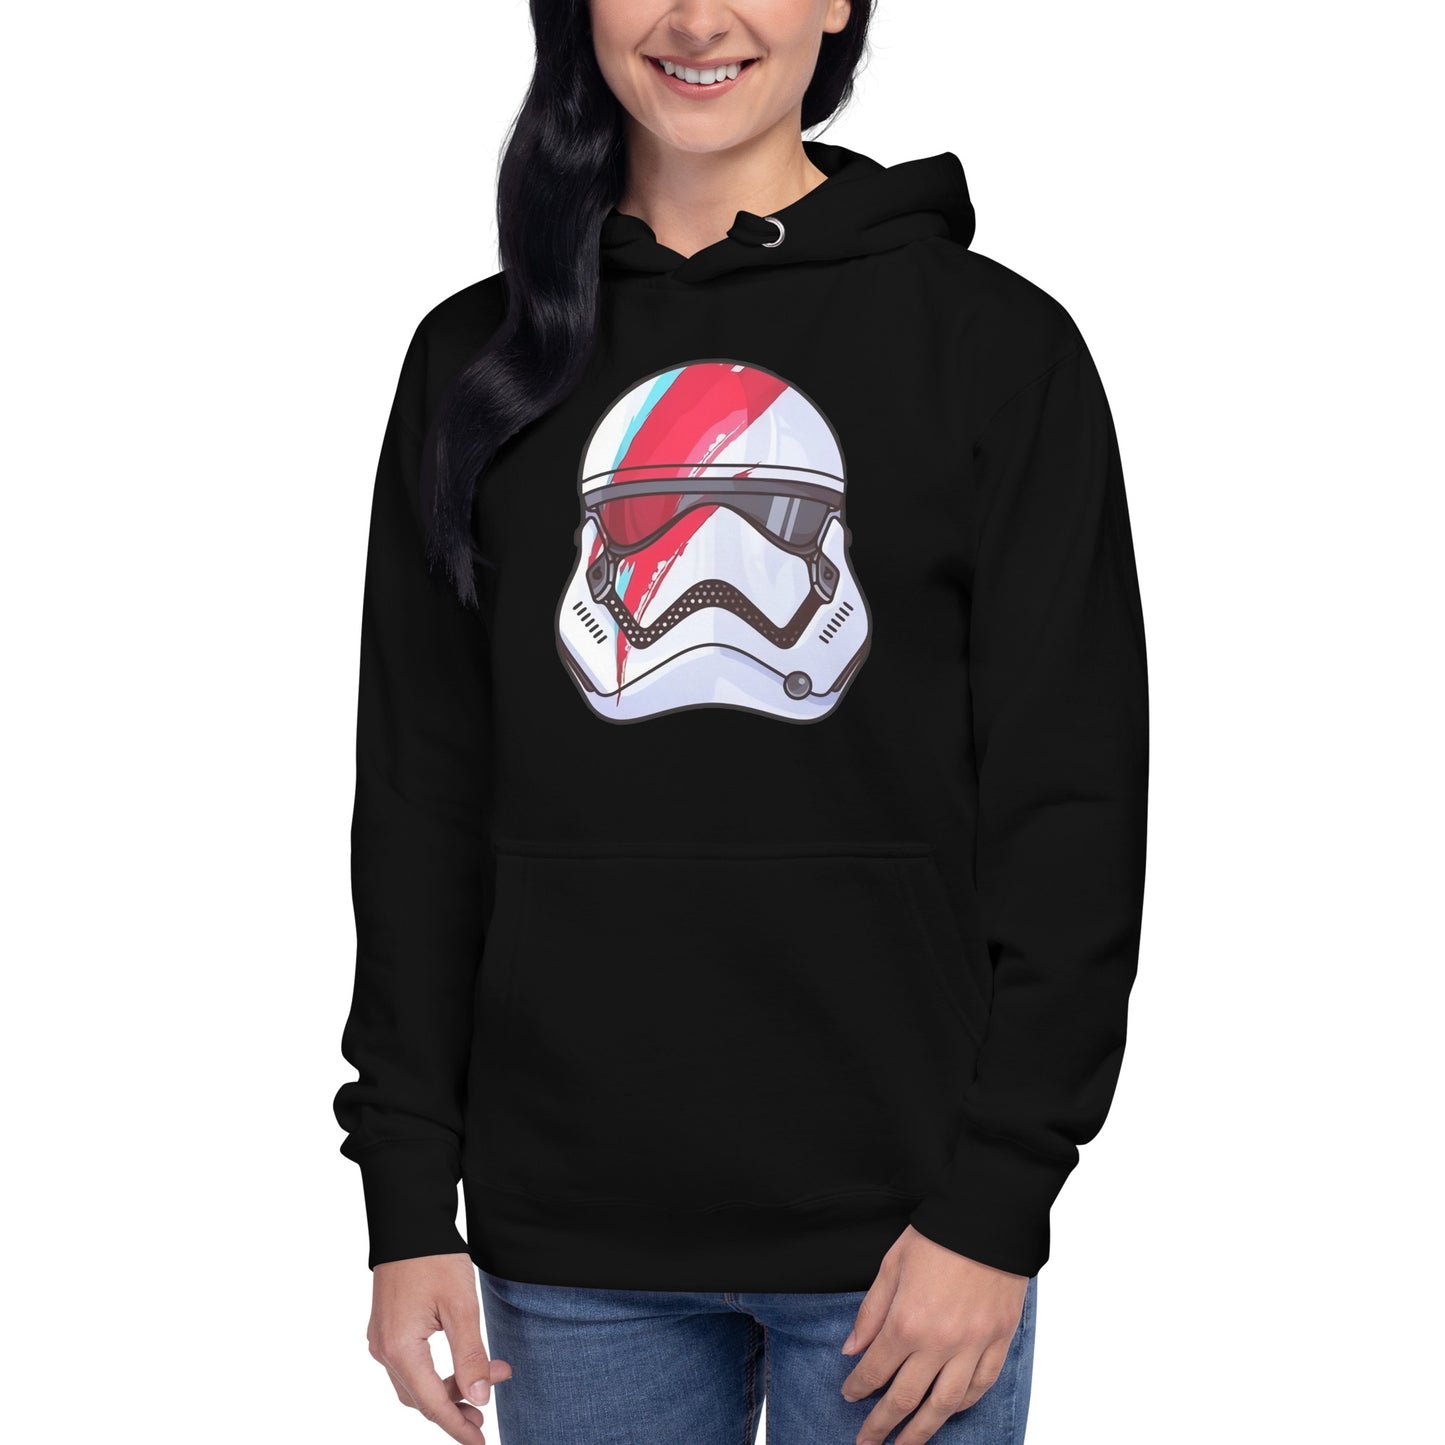 hoodie Rebel Stormtrooper Disponible en Superstar, la mejor tienda online para comprar tu merch favorita, la mejor Calidad, compra Ahora en Superstar!